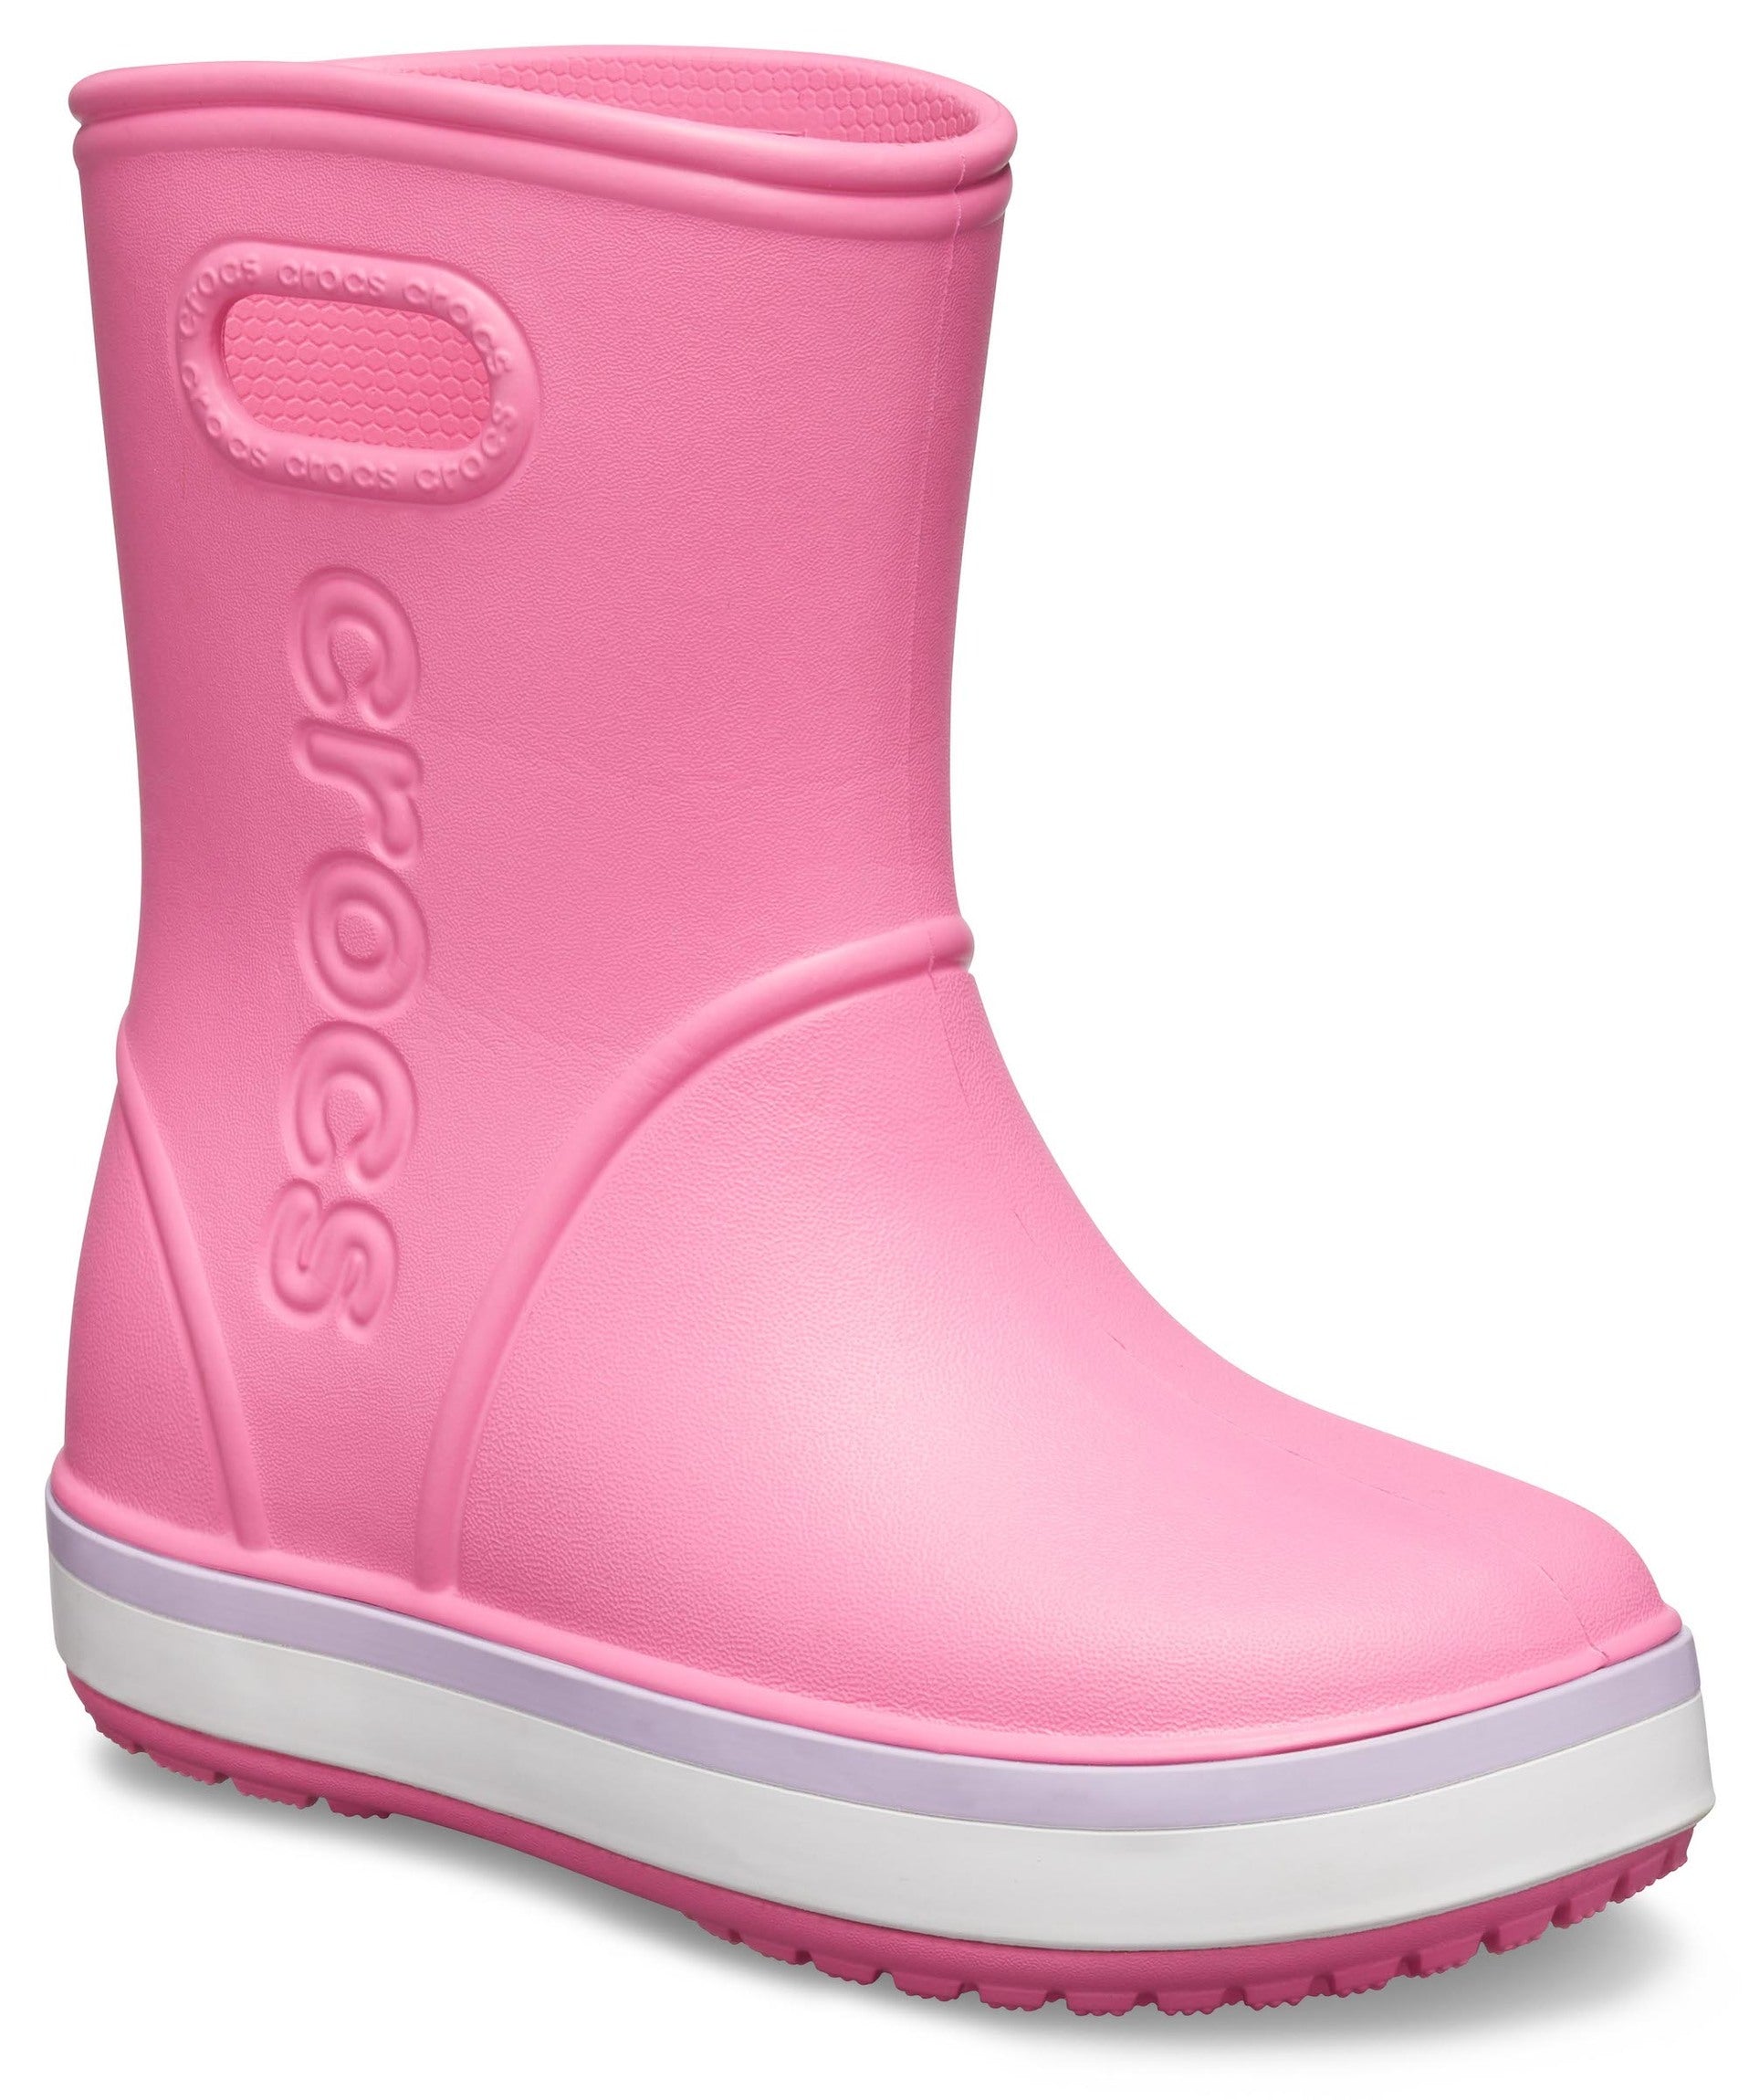 Crocband Rain Boot K Pink Lemonade/Lavender